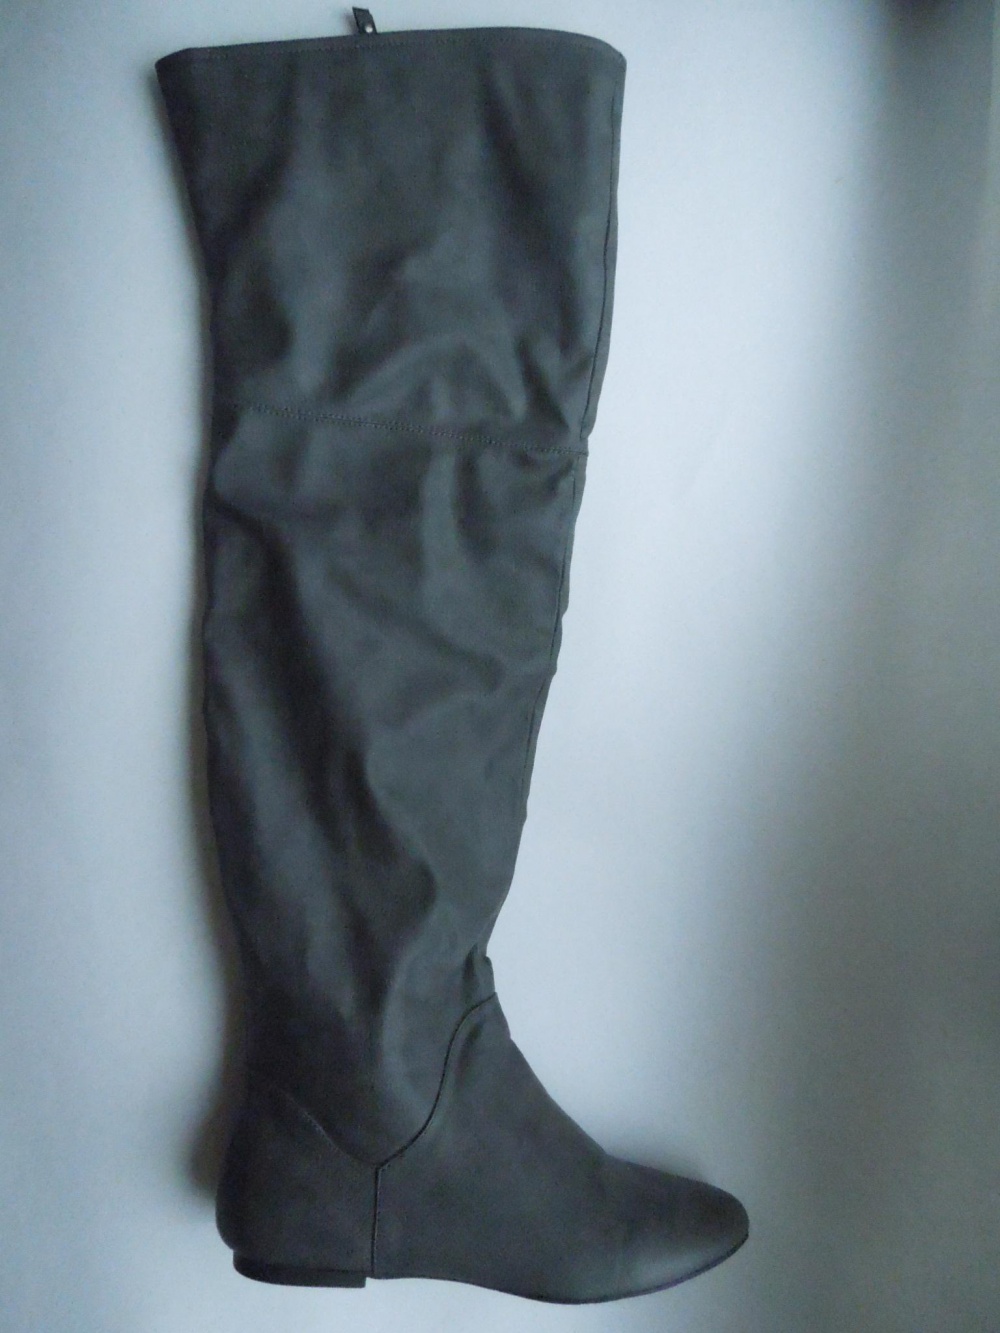 Сапоги-ботфорты серые женские Zara, 40 размер (в реальности на 38-39), весна-осень, выше колена